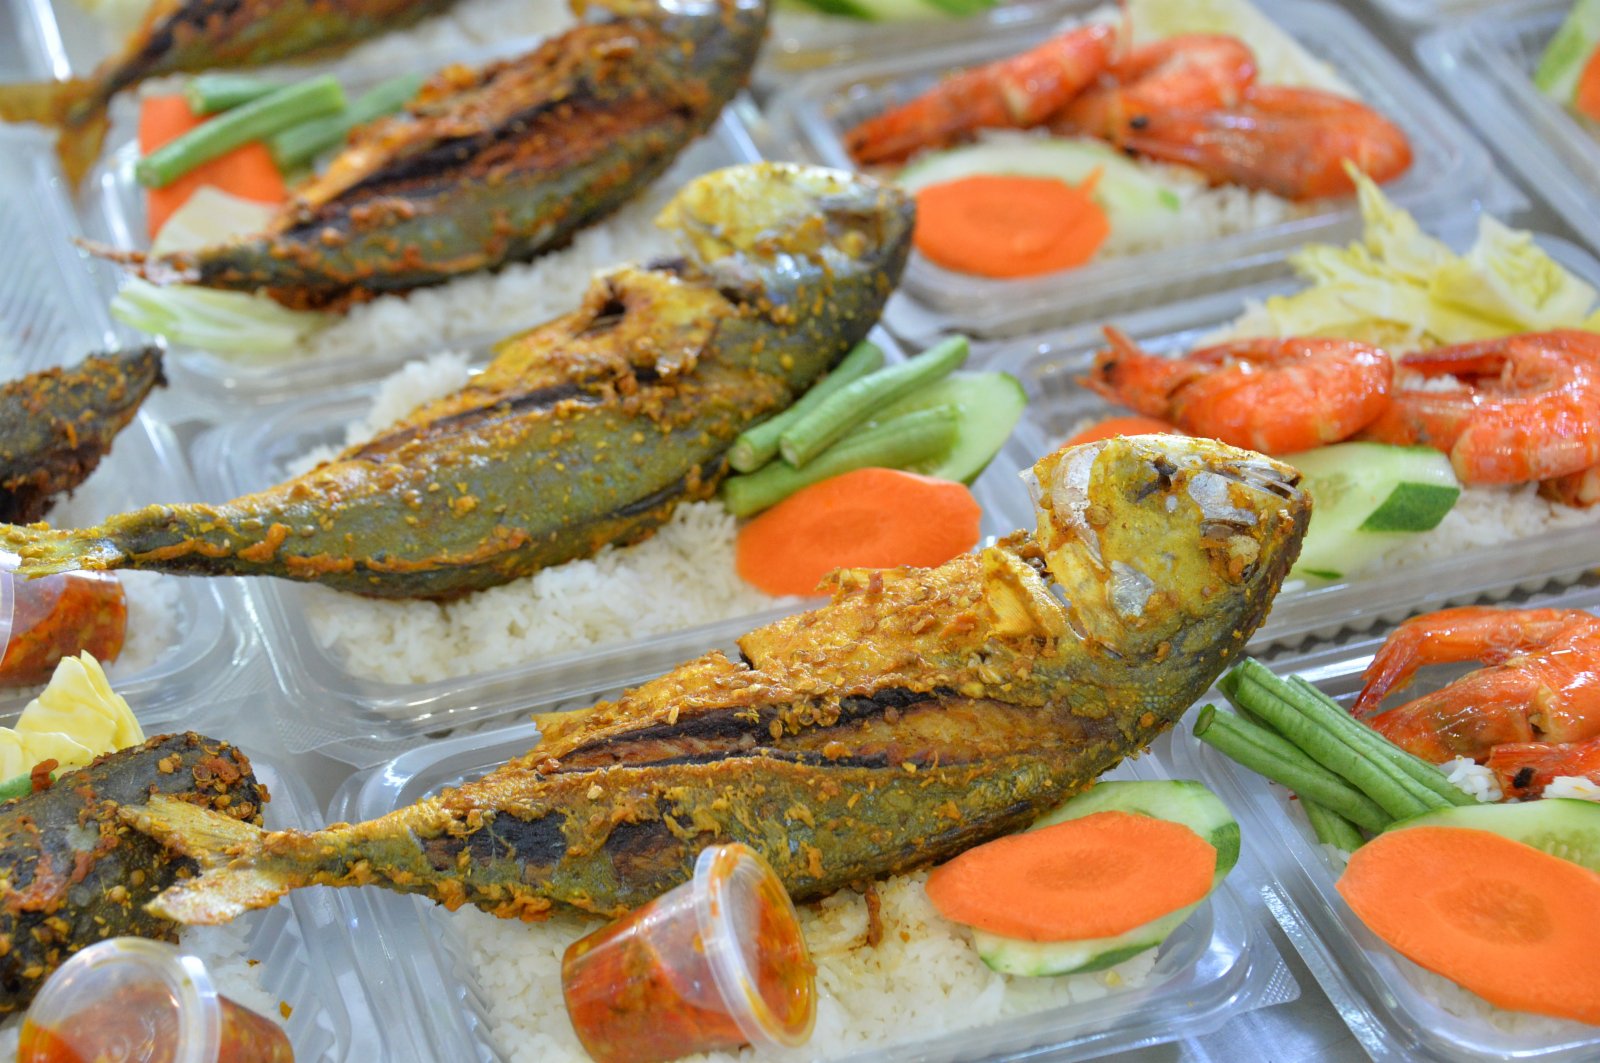 這是4月14日文萊齋月前在斯里巴加灣市市集上拍攝的當地食品。